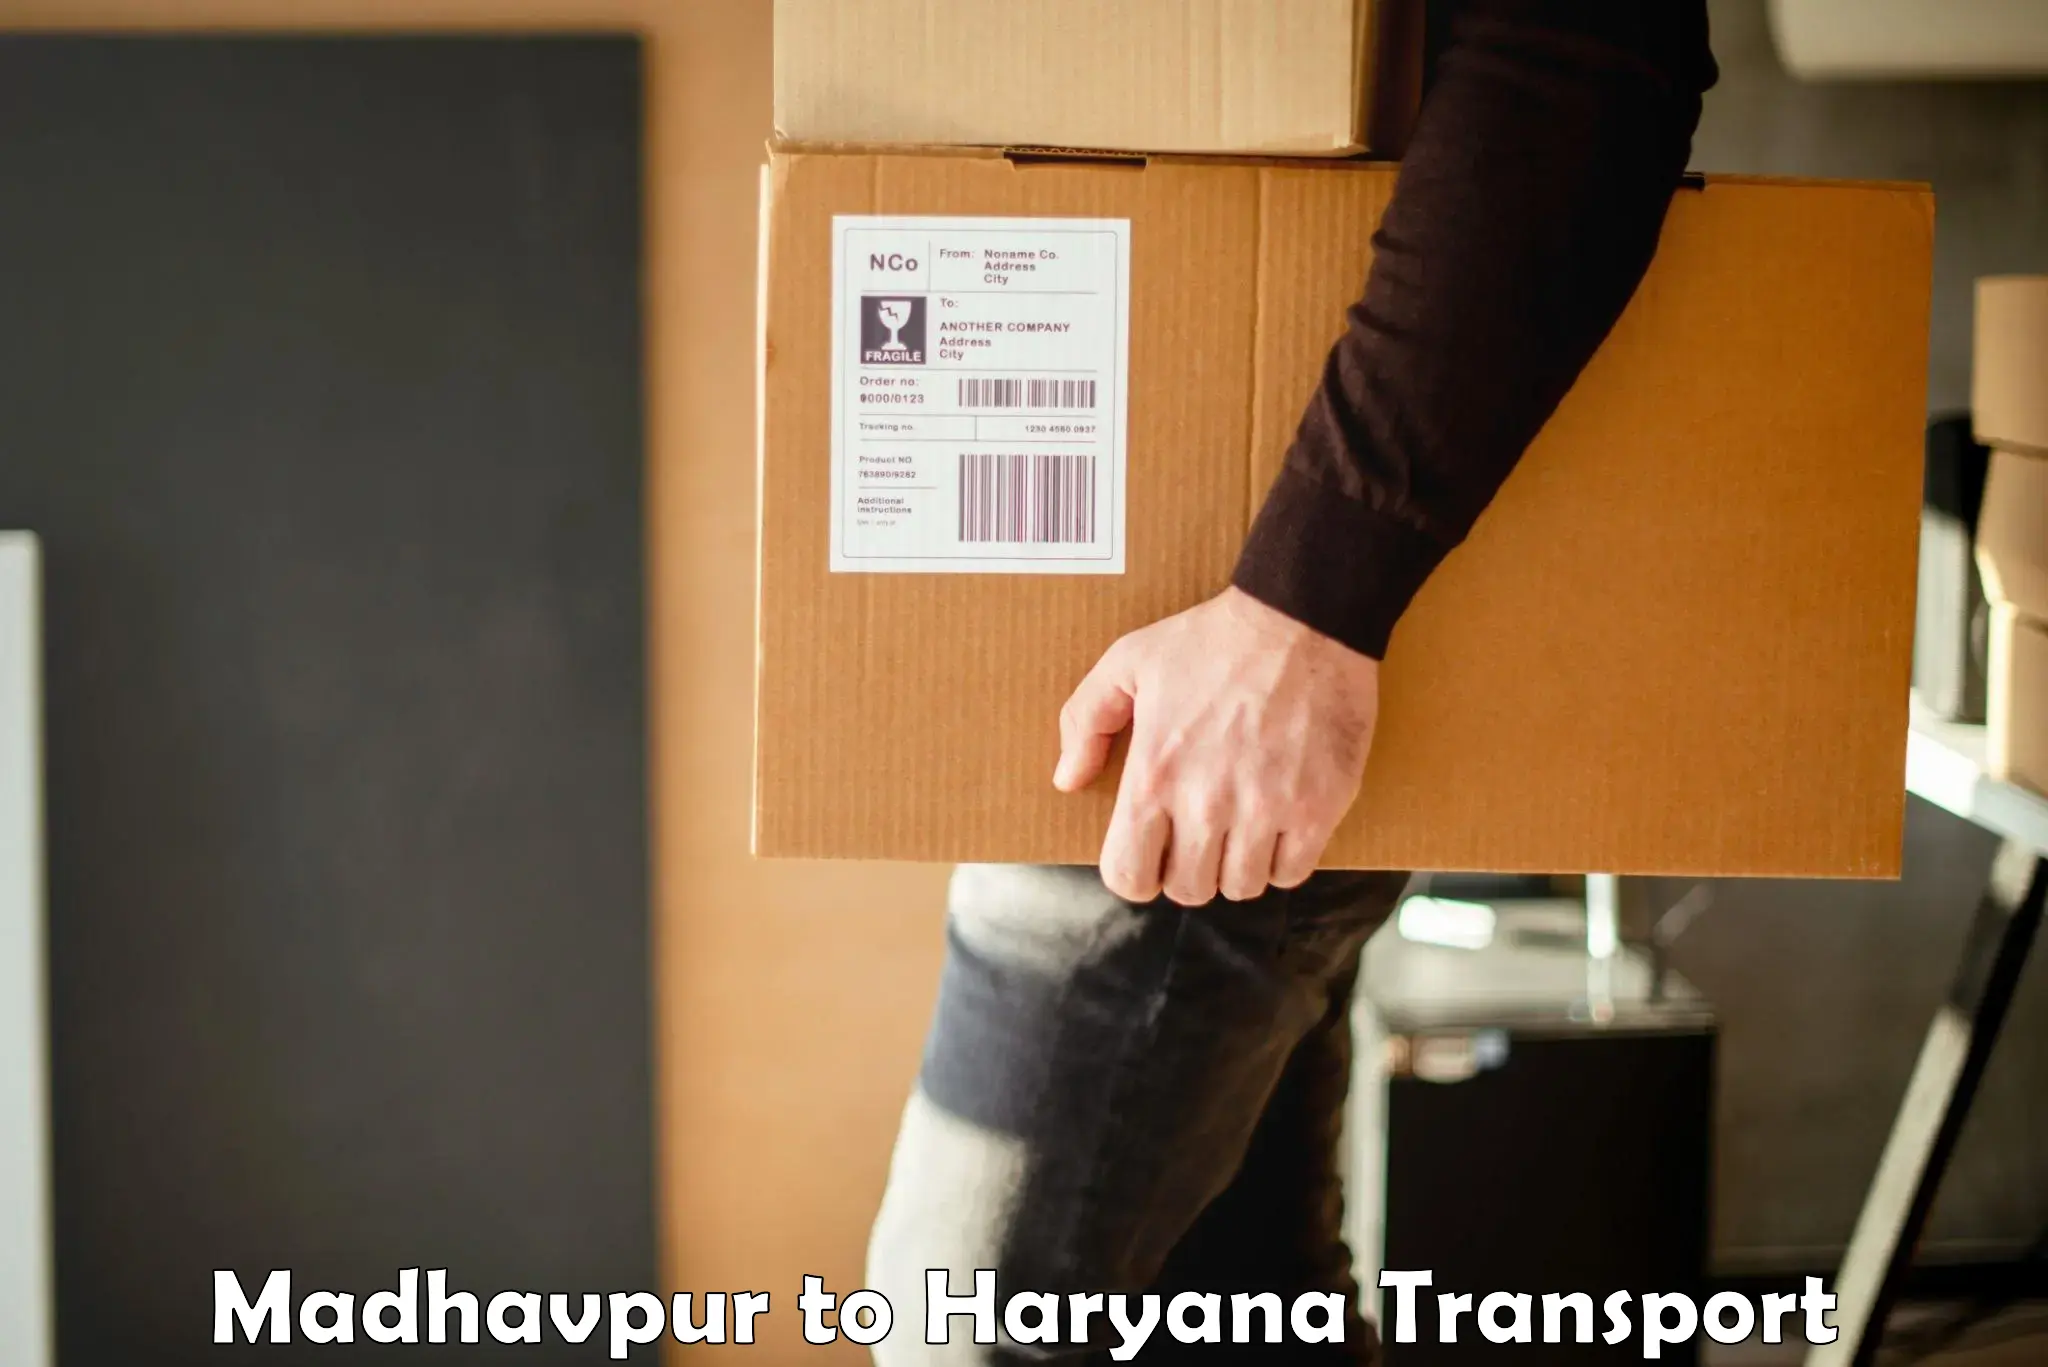 Truck transport companies in India Madhavpur to Pataudi